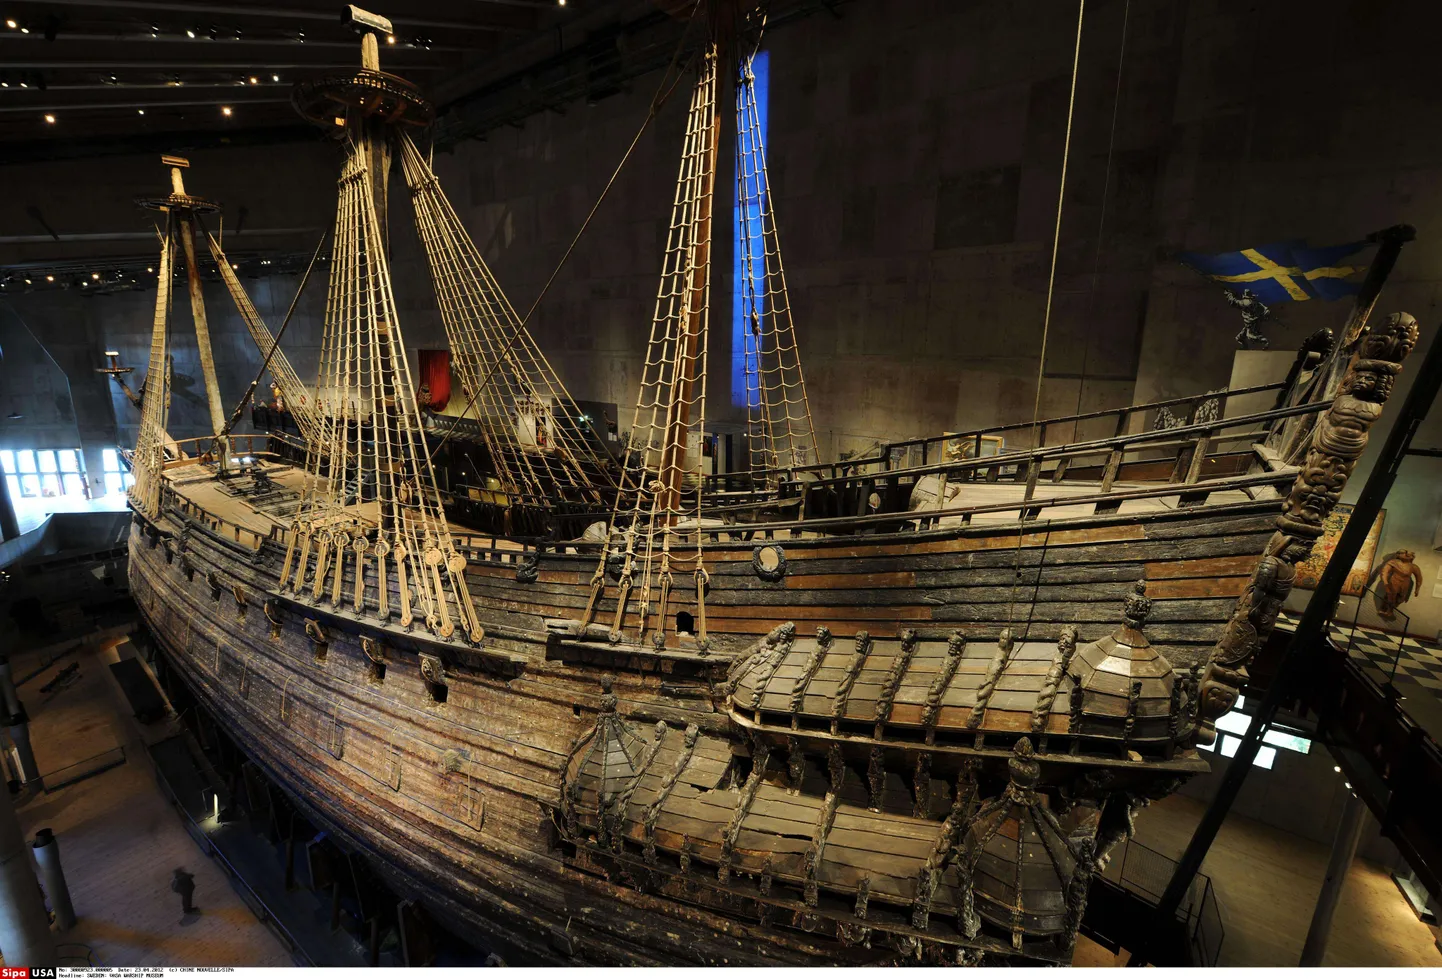 Rootsi 17. sajandi sõjalaev Vasa asub Vasa muuseumis pealinnas Stockholmis